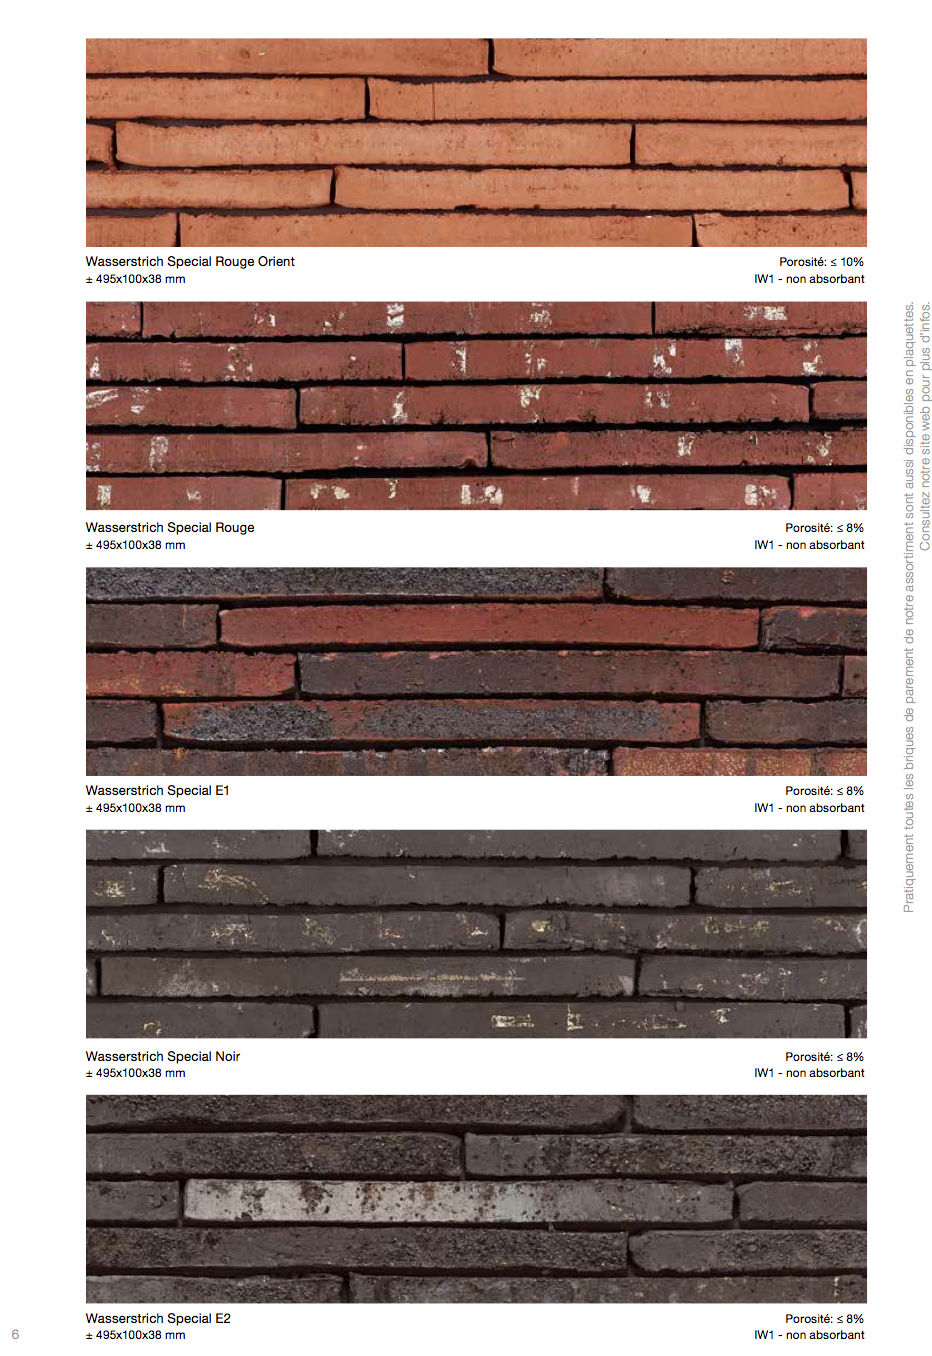 ditail-materiales-construccion-wienerberger-brick-soluciones